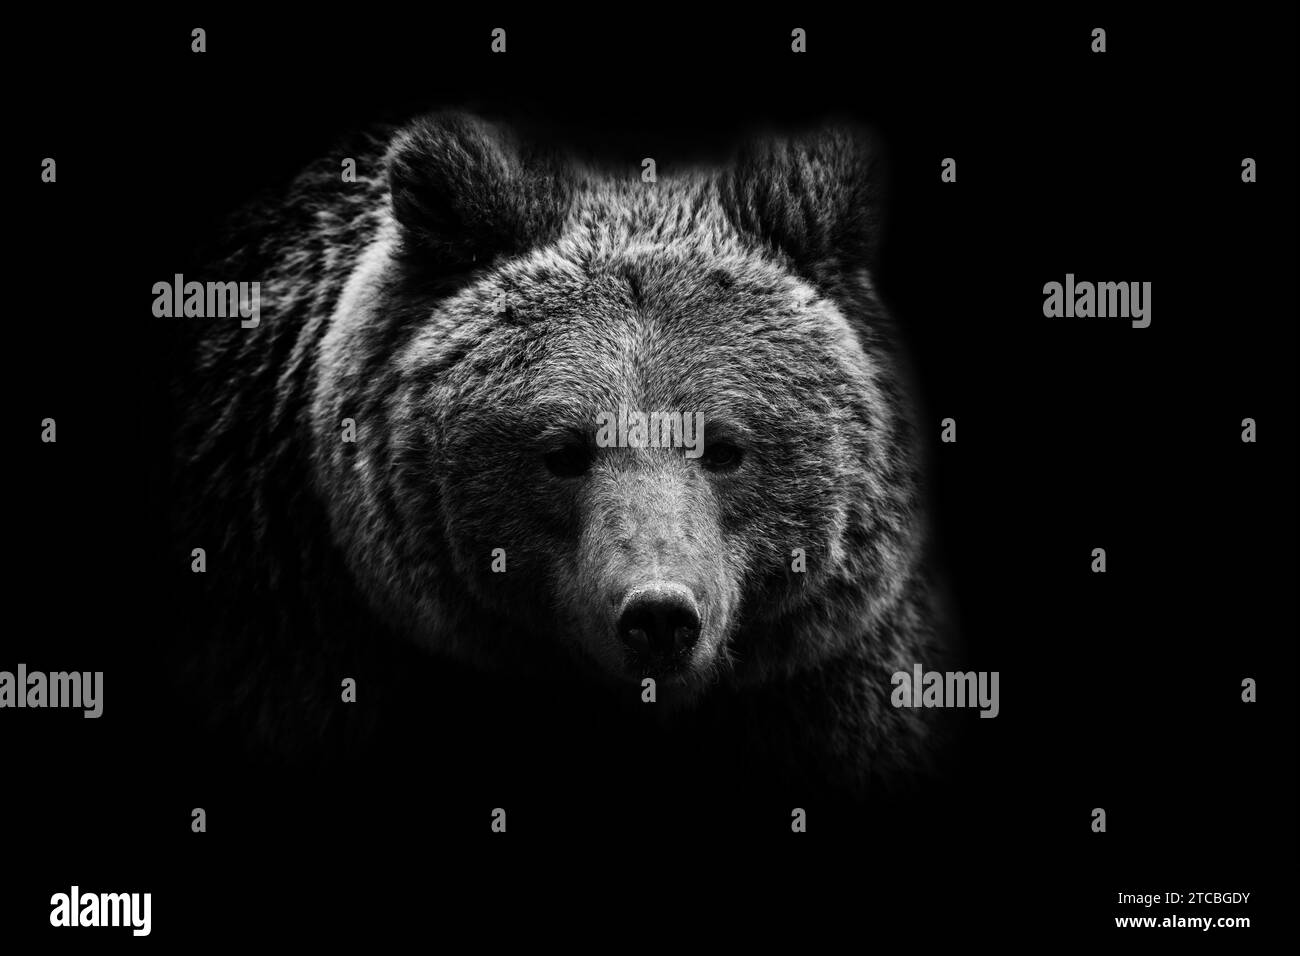 Ritratto ravvicinato di un orso adulto in bianco e nero. Animale su sfondo scuro Foto Stock